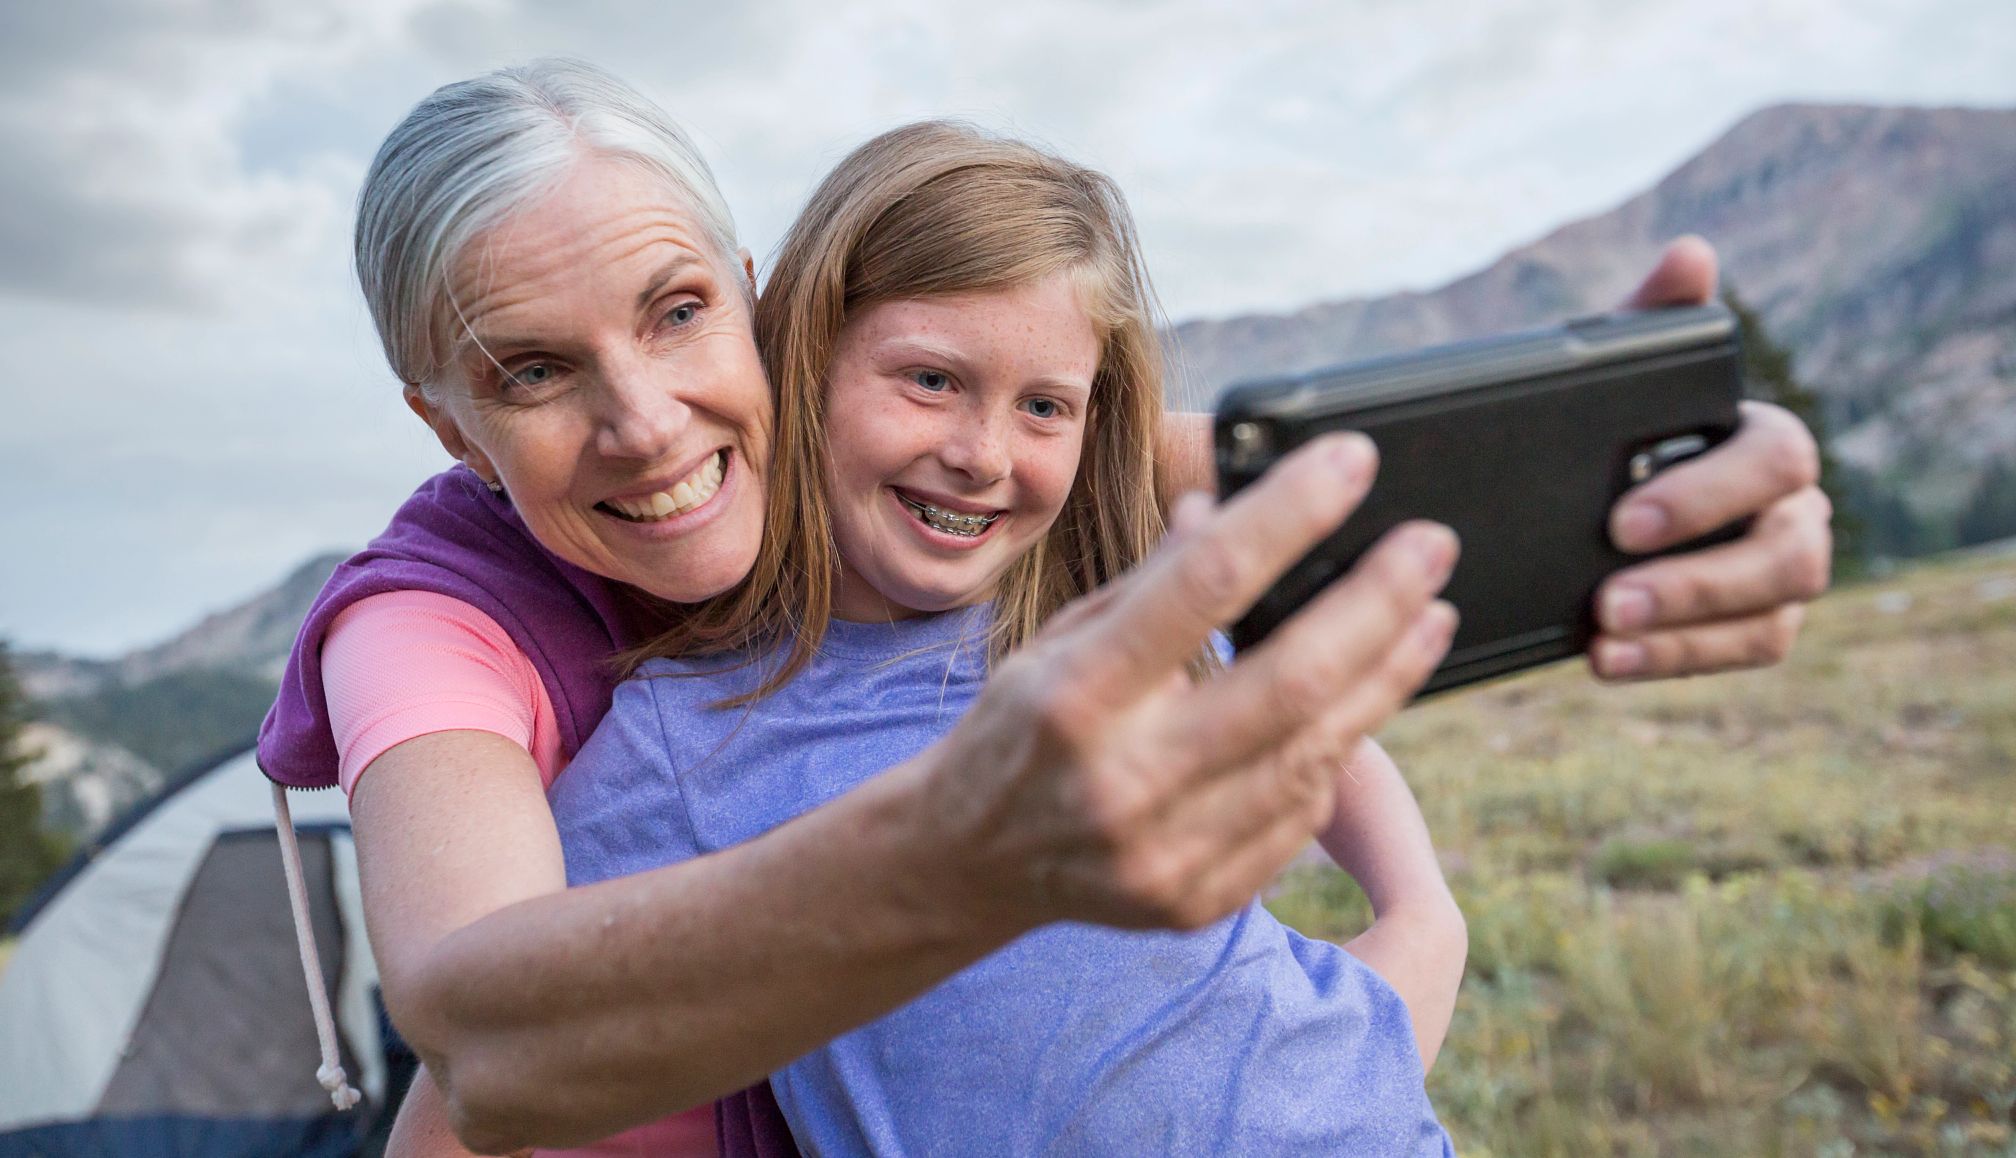 Abuela tomándose una selfi con su nieta